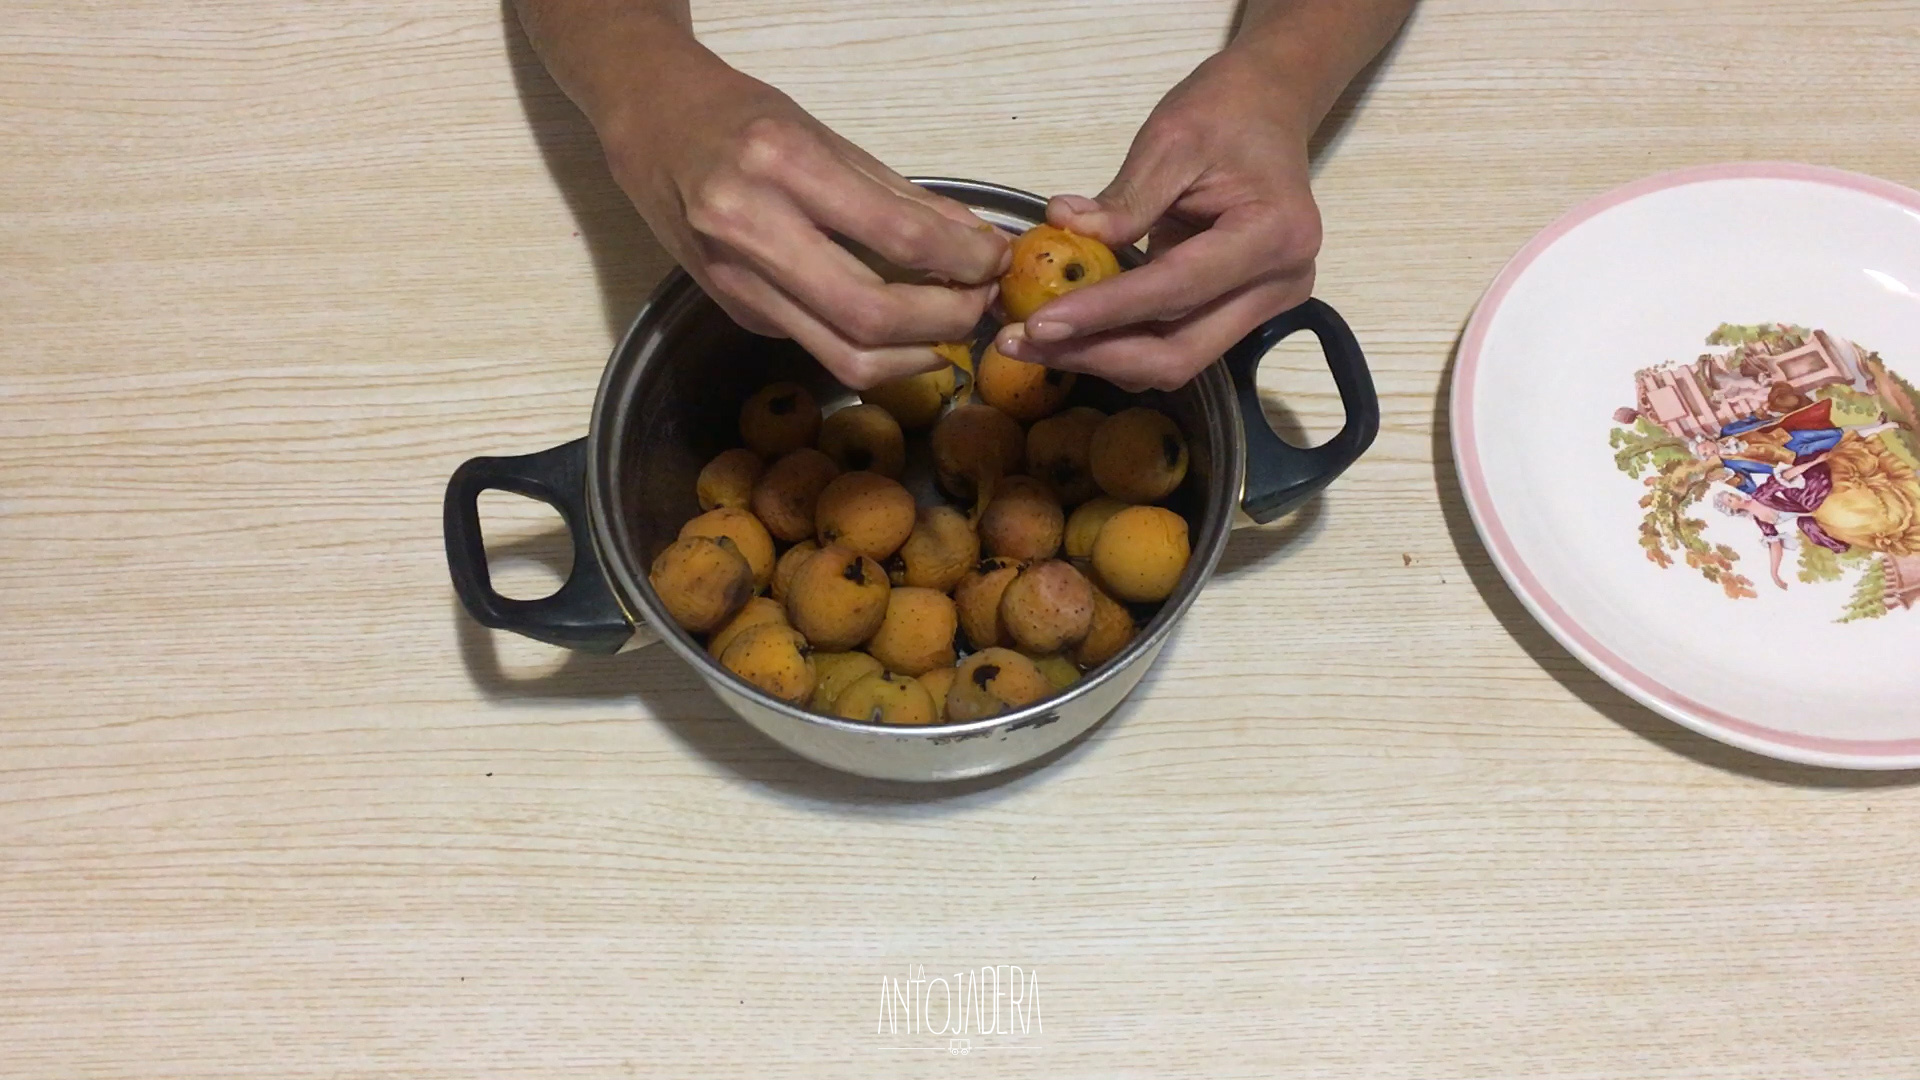 La Antojadera | Ponche de Frutas Navideño